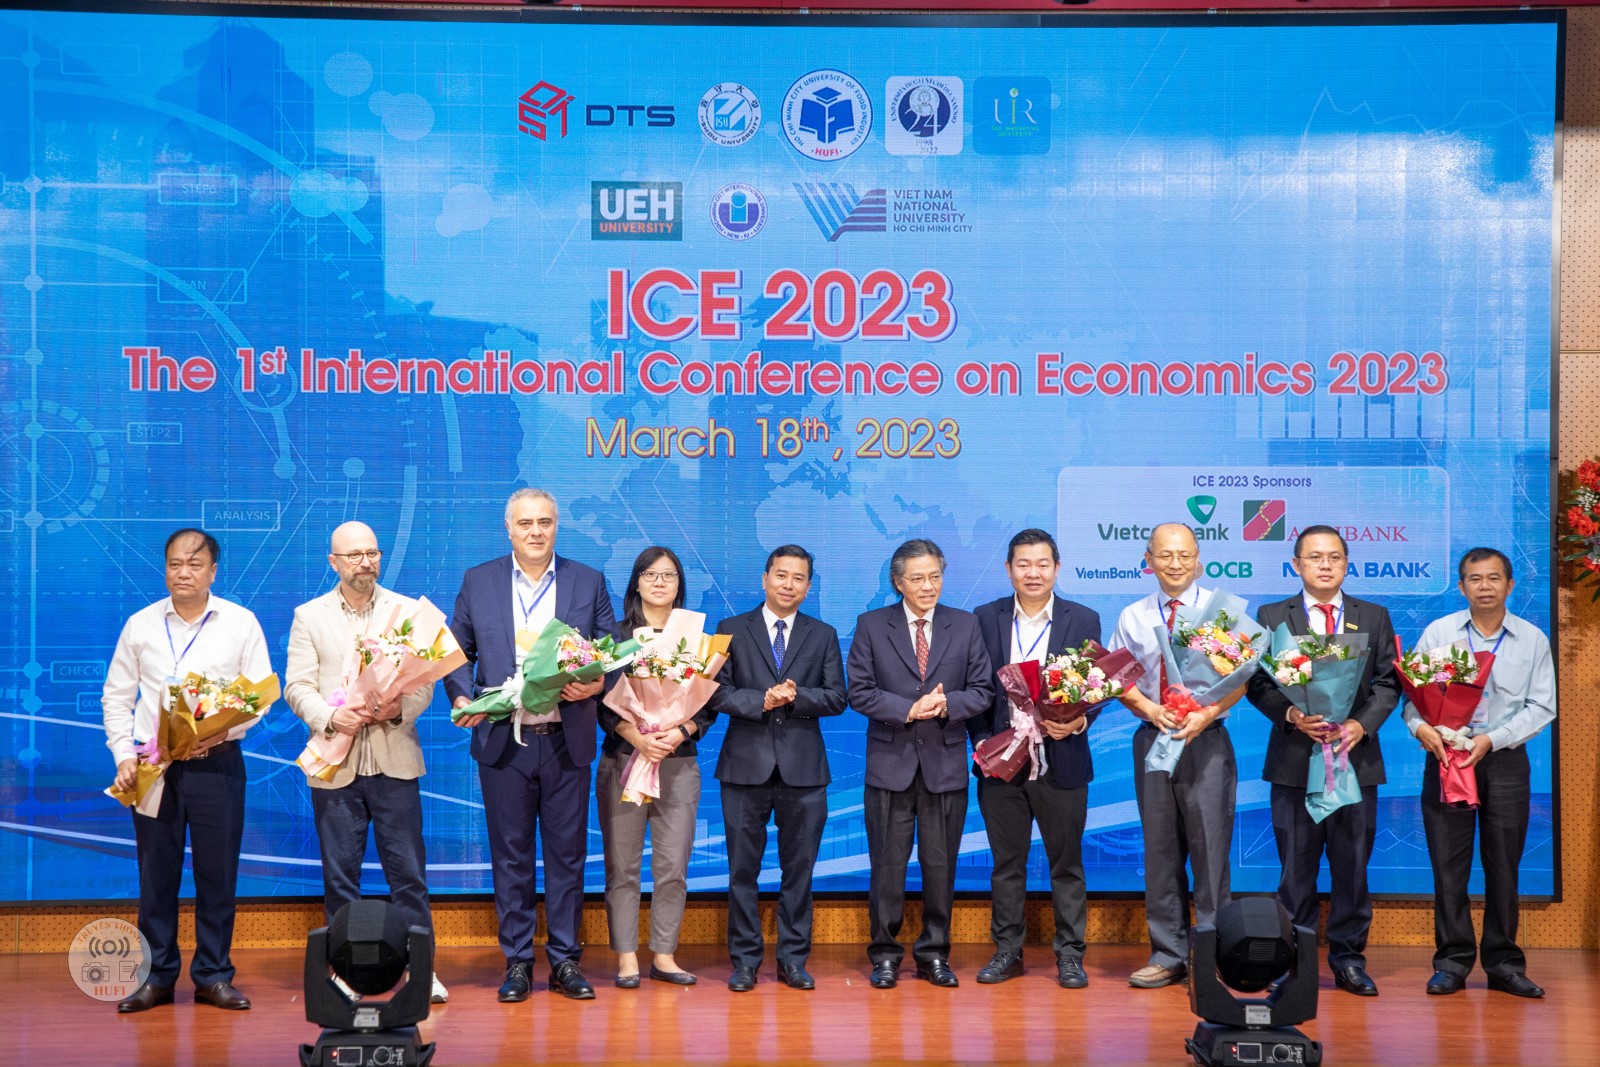 Hội nghị Quốc tế về Kinh tế lần thứ nhất (ICE 2023): "Dữ liệu lớn, chuyển đổi số trong khối ngành kinh tế, tài chính, ngân hàng và du lịch"